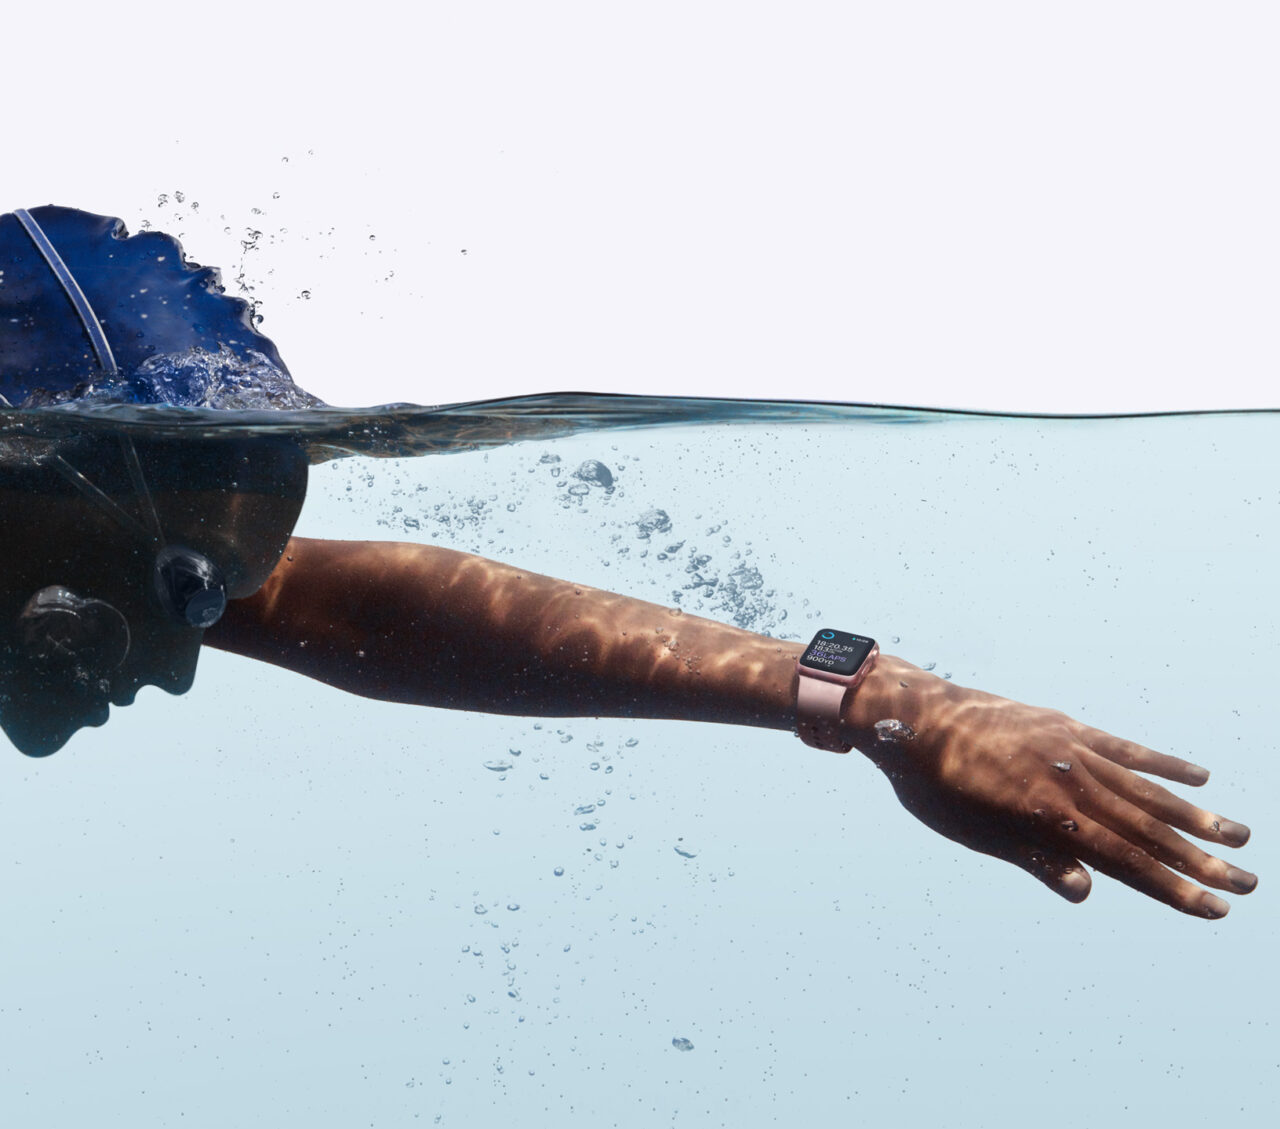 Pływak w trakcie przeciągnięcia ręki pod wodą, z zegarkiem na nadgarstku; widok zarówno powyżej, jak i poniżej powierzchni wody.